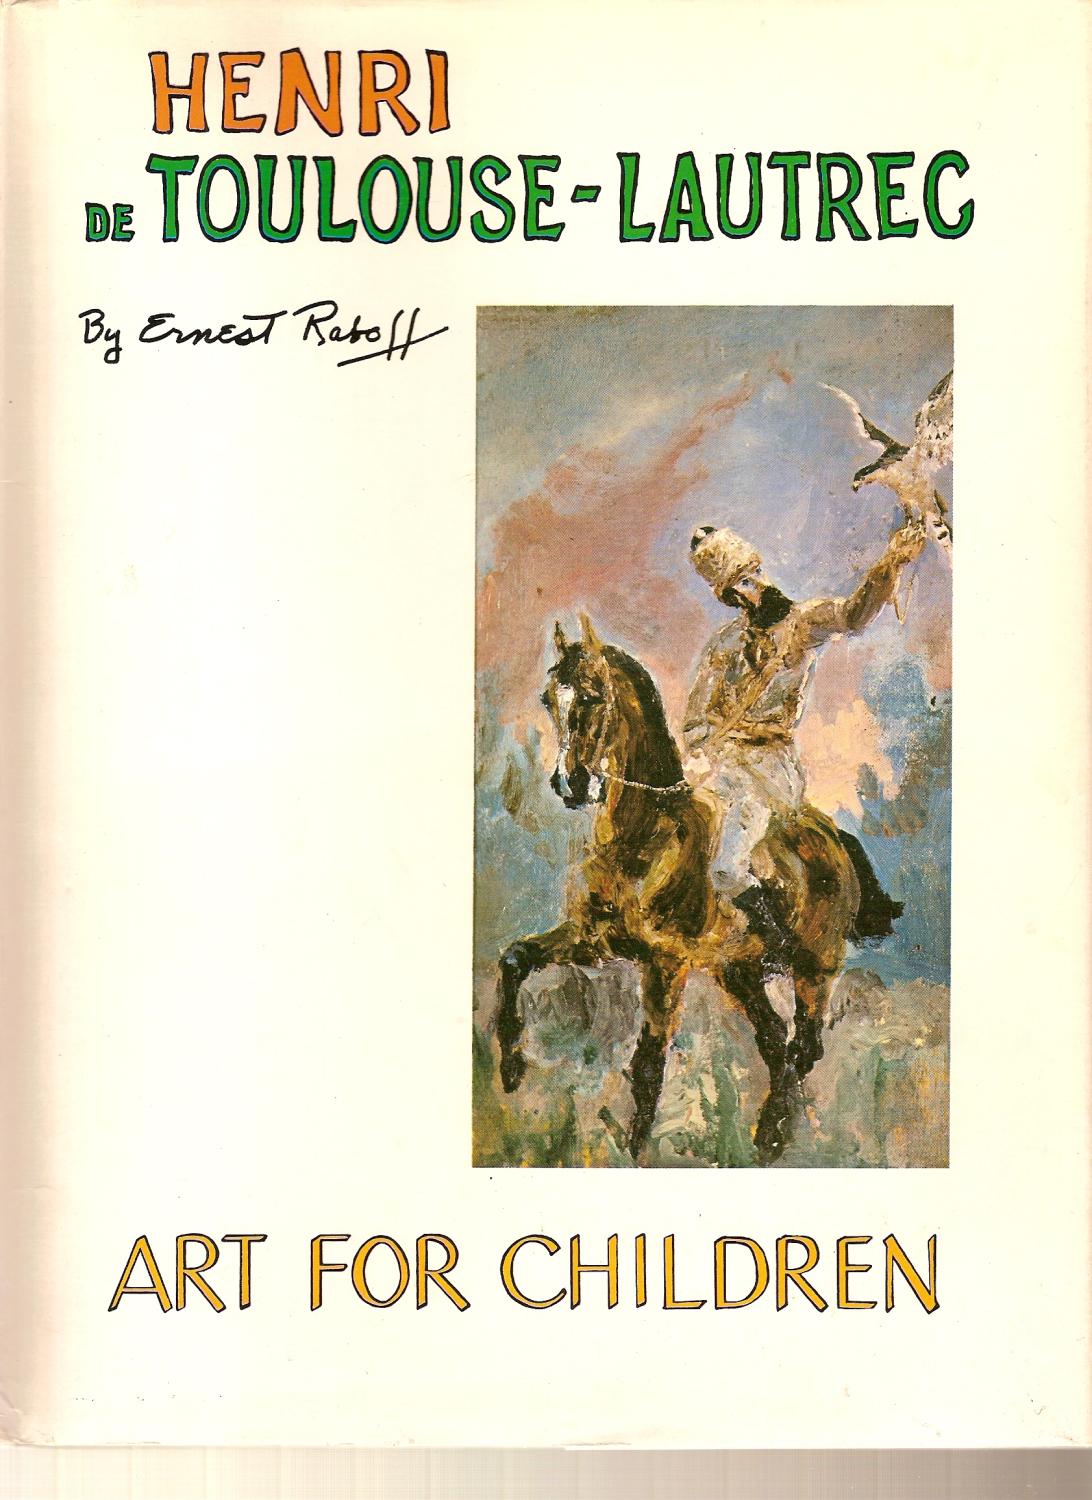 Henri de Toulouse-Lautrec, (Art for children)